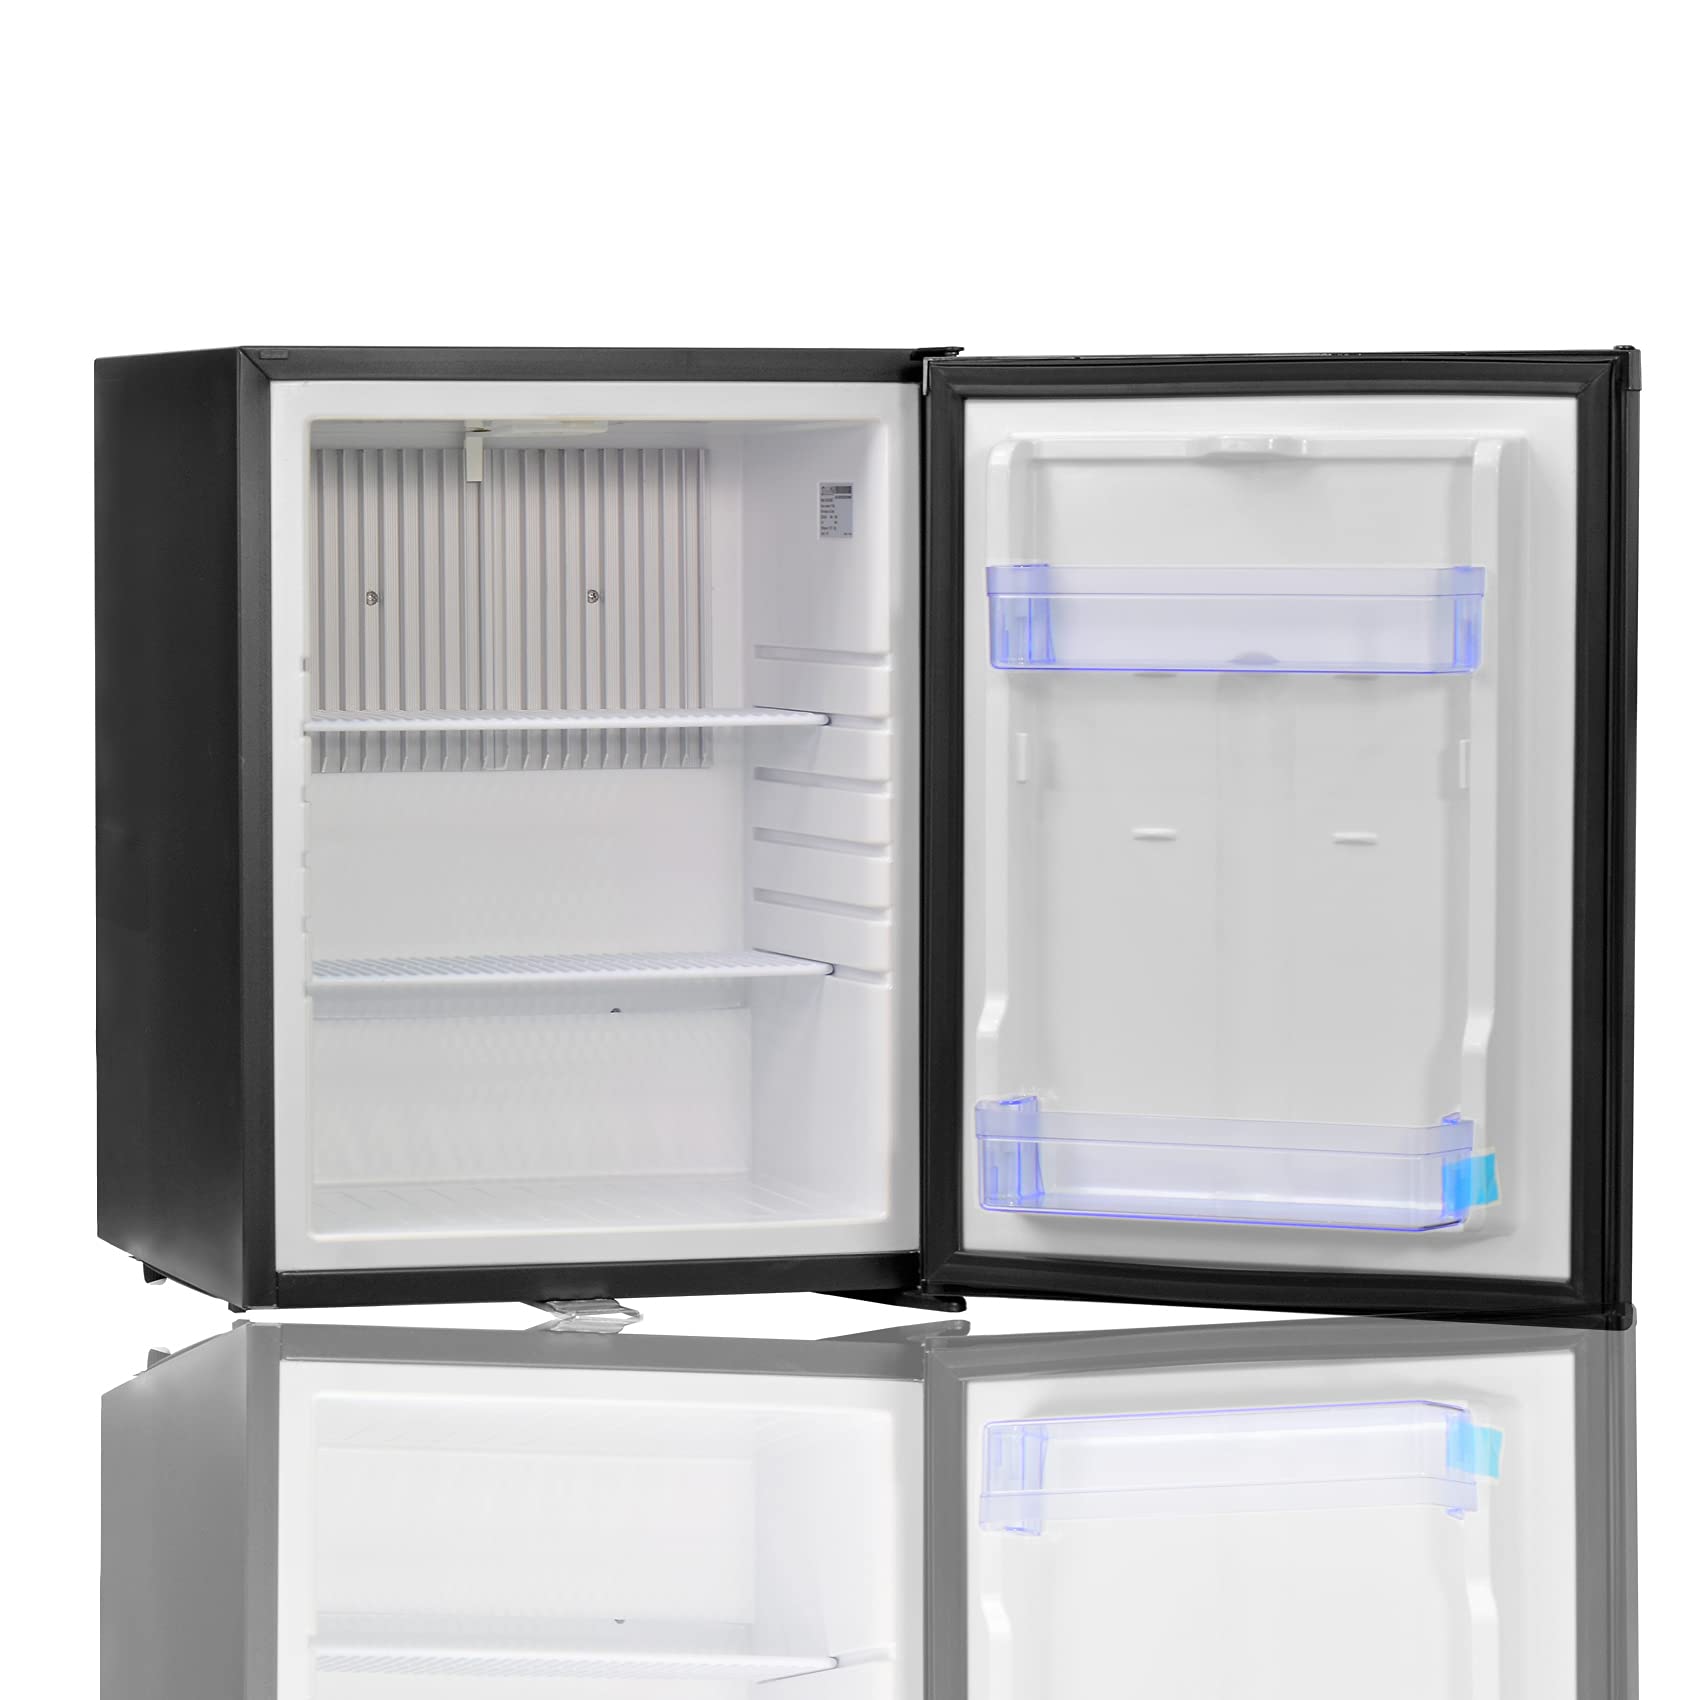 Smad intégré dans l'absorption de gaz réfrigérateur mini